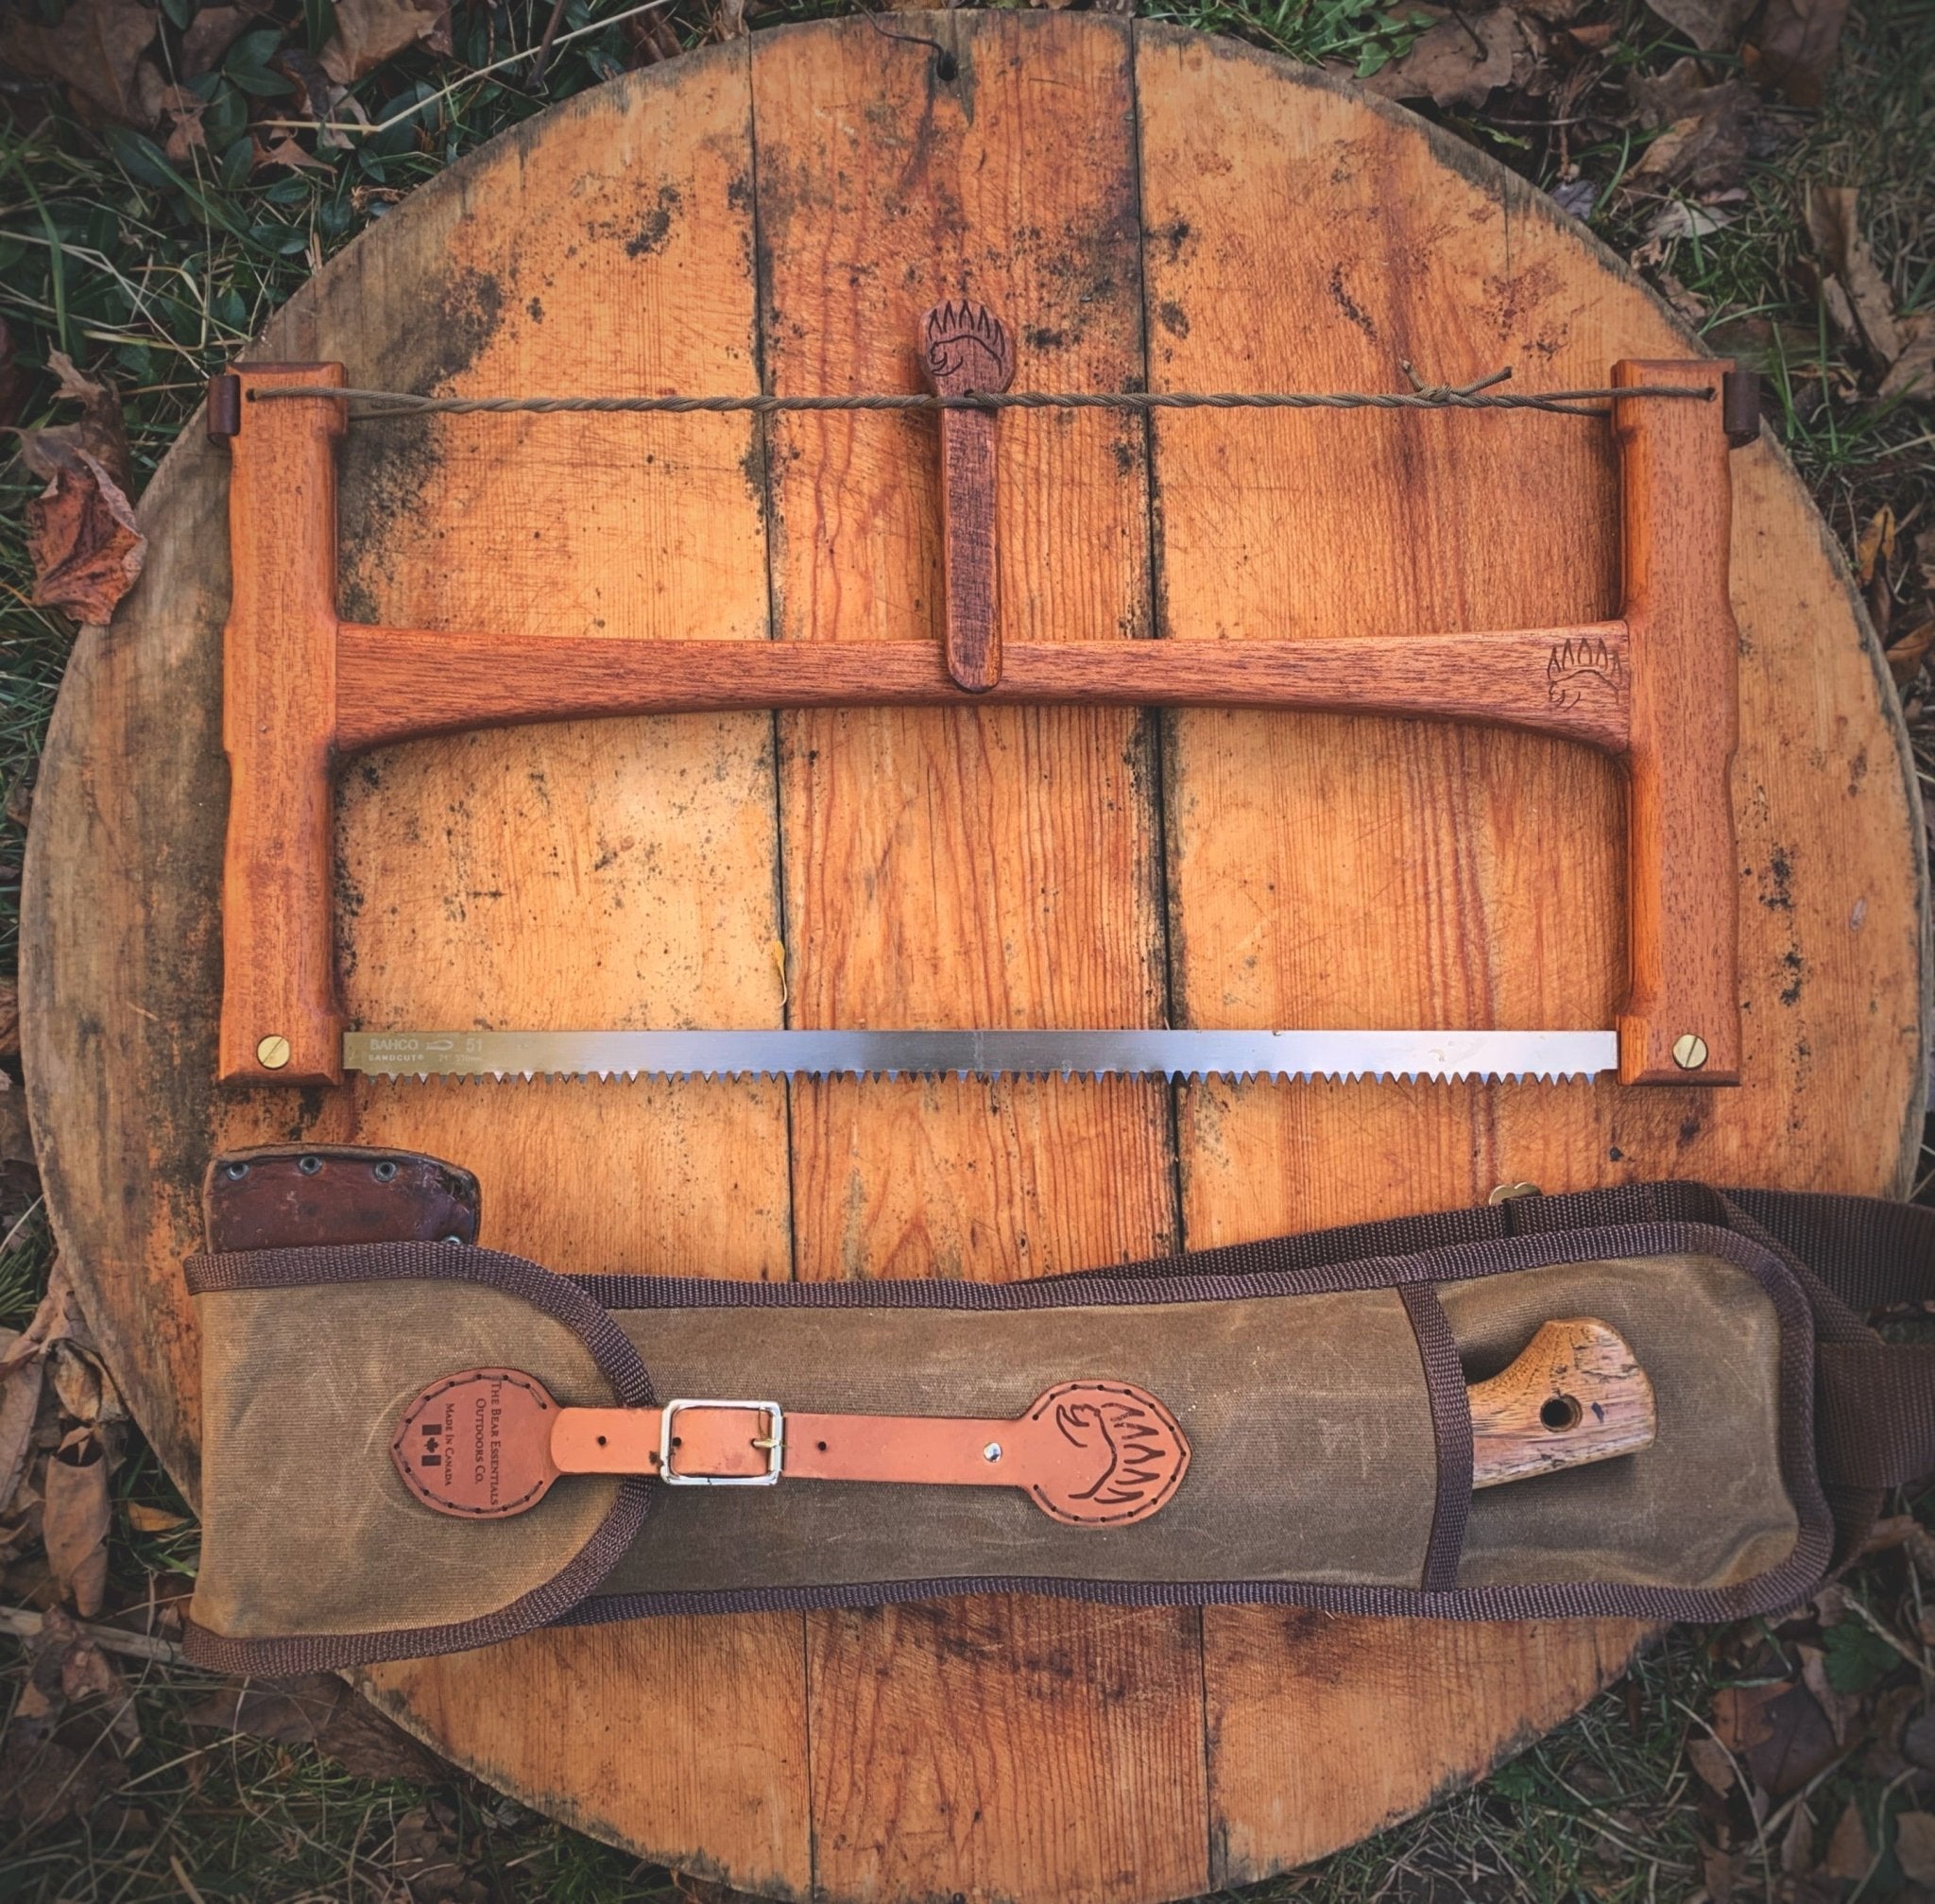 The Original Bucksaw – The Bear Essentials Outdoors Co.